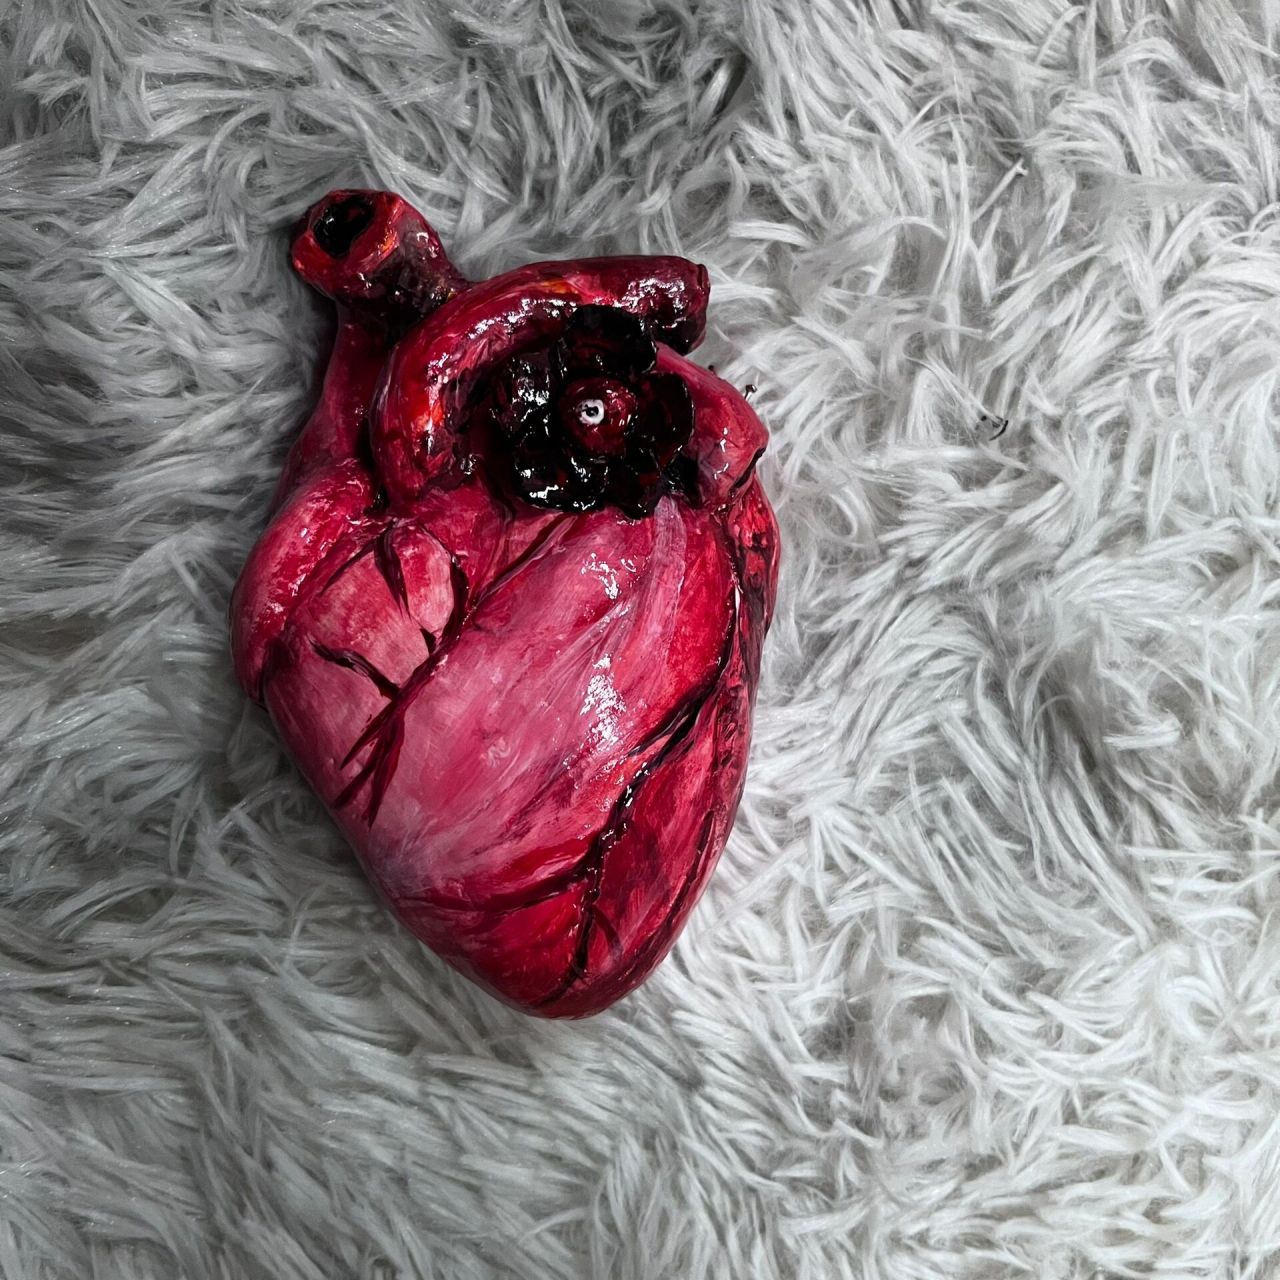 心脏模型彩泥制作图片